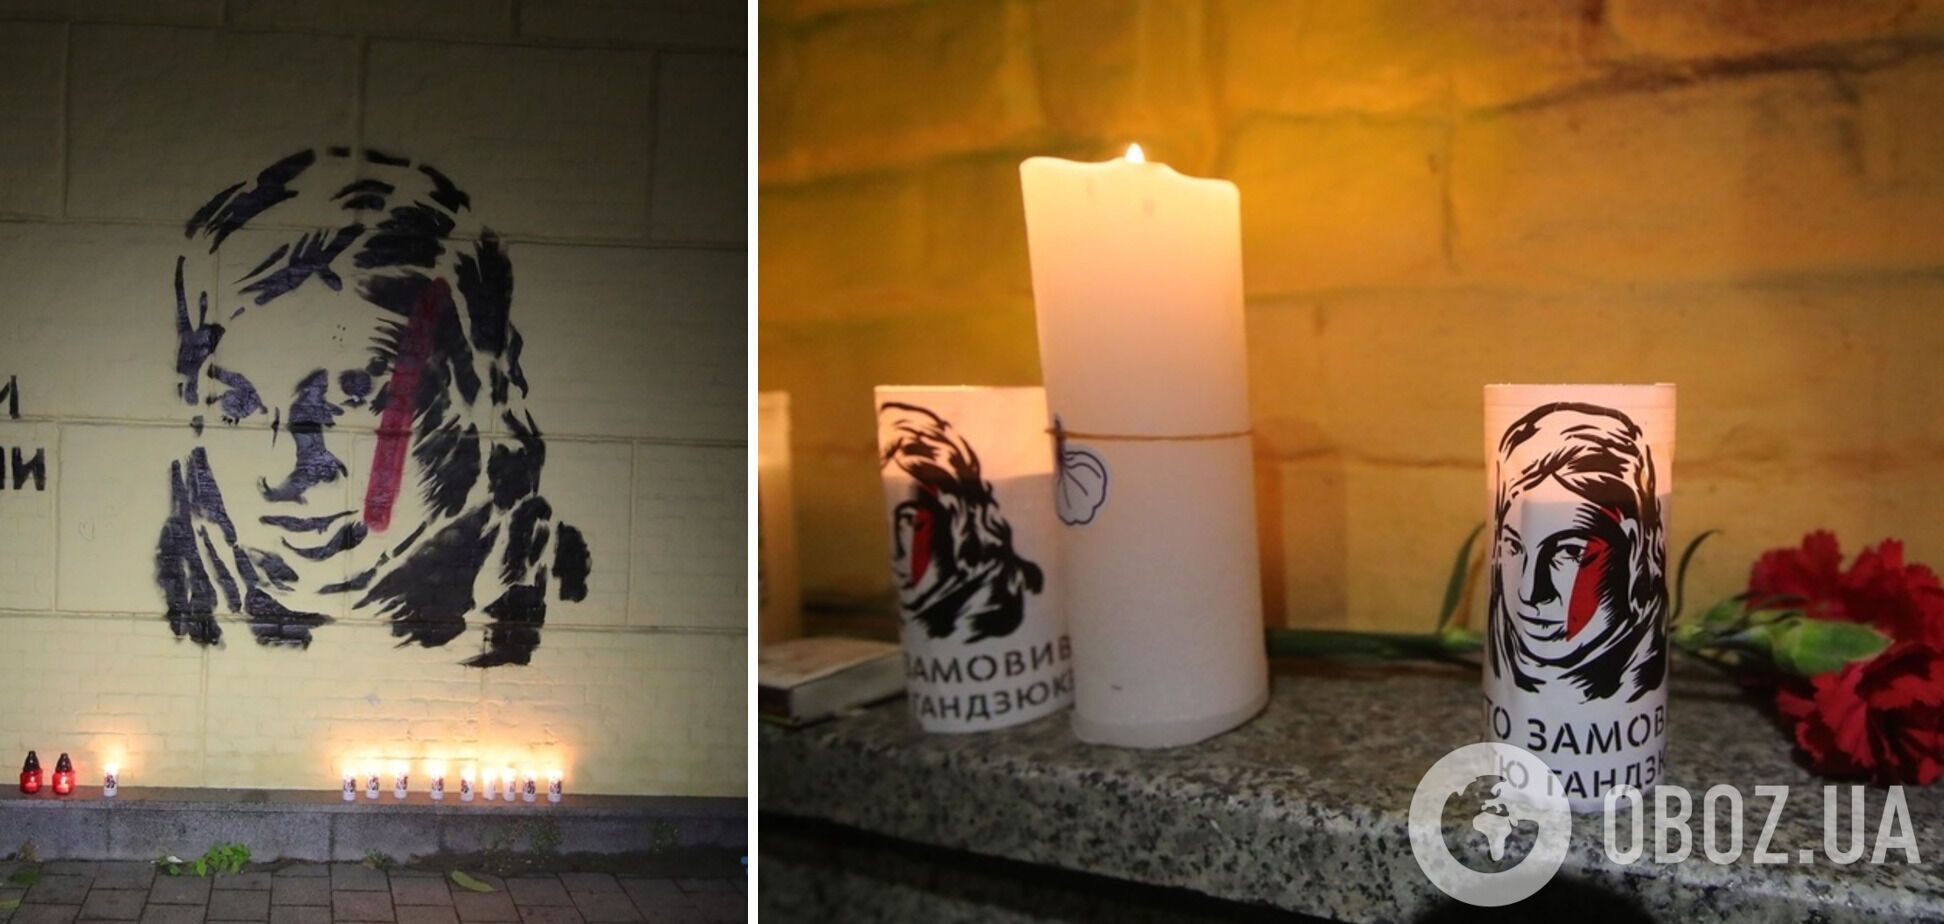 Активисты зажгли лампадки под портретом Екатерины